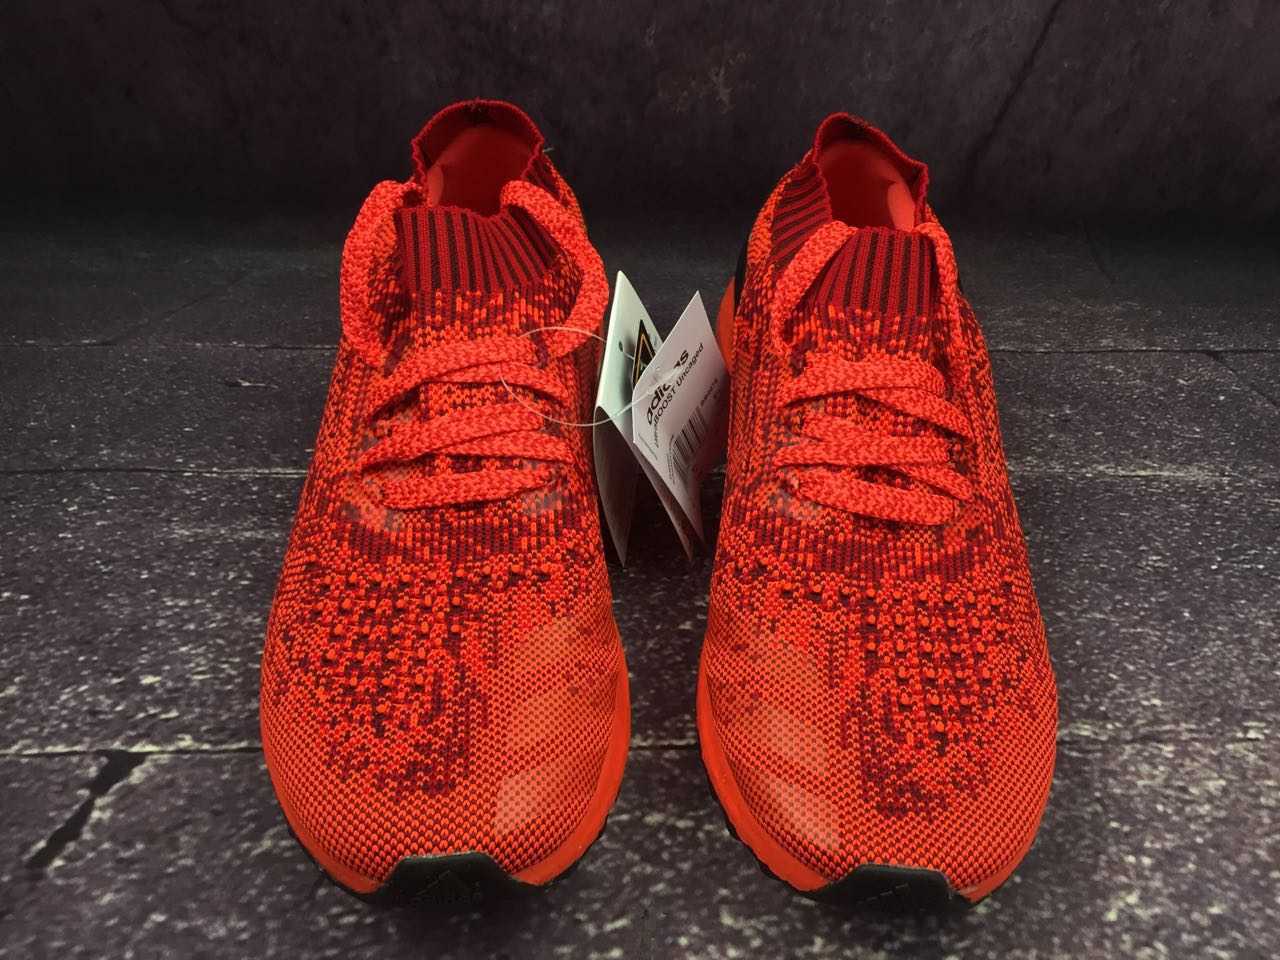 6正品新款真爆阿迪达斯男子运动鞋 Adidas Ultra boost Uncaged 袜子运动跑步鞋BB4678 红色